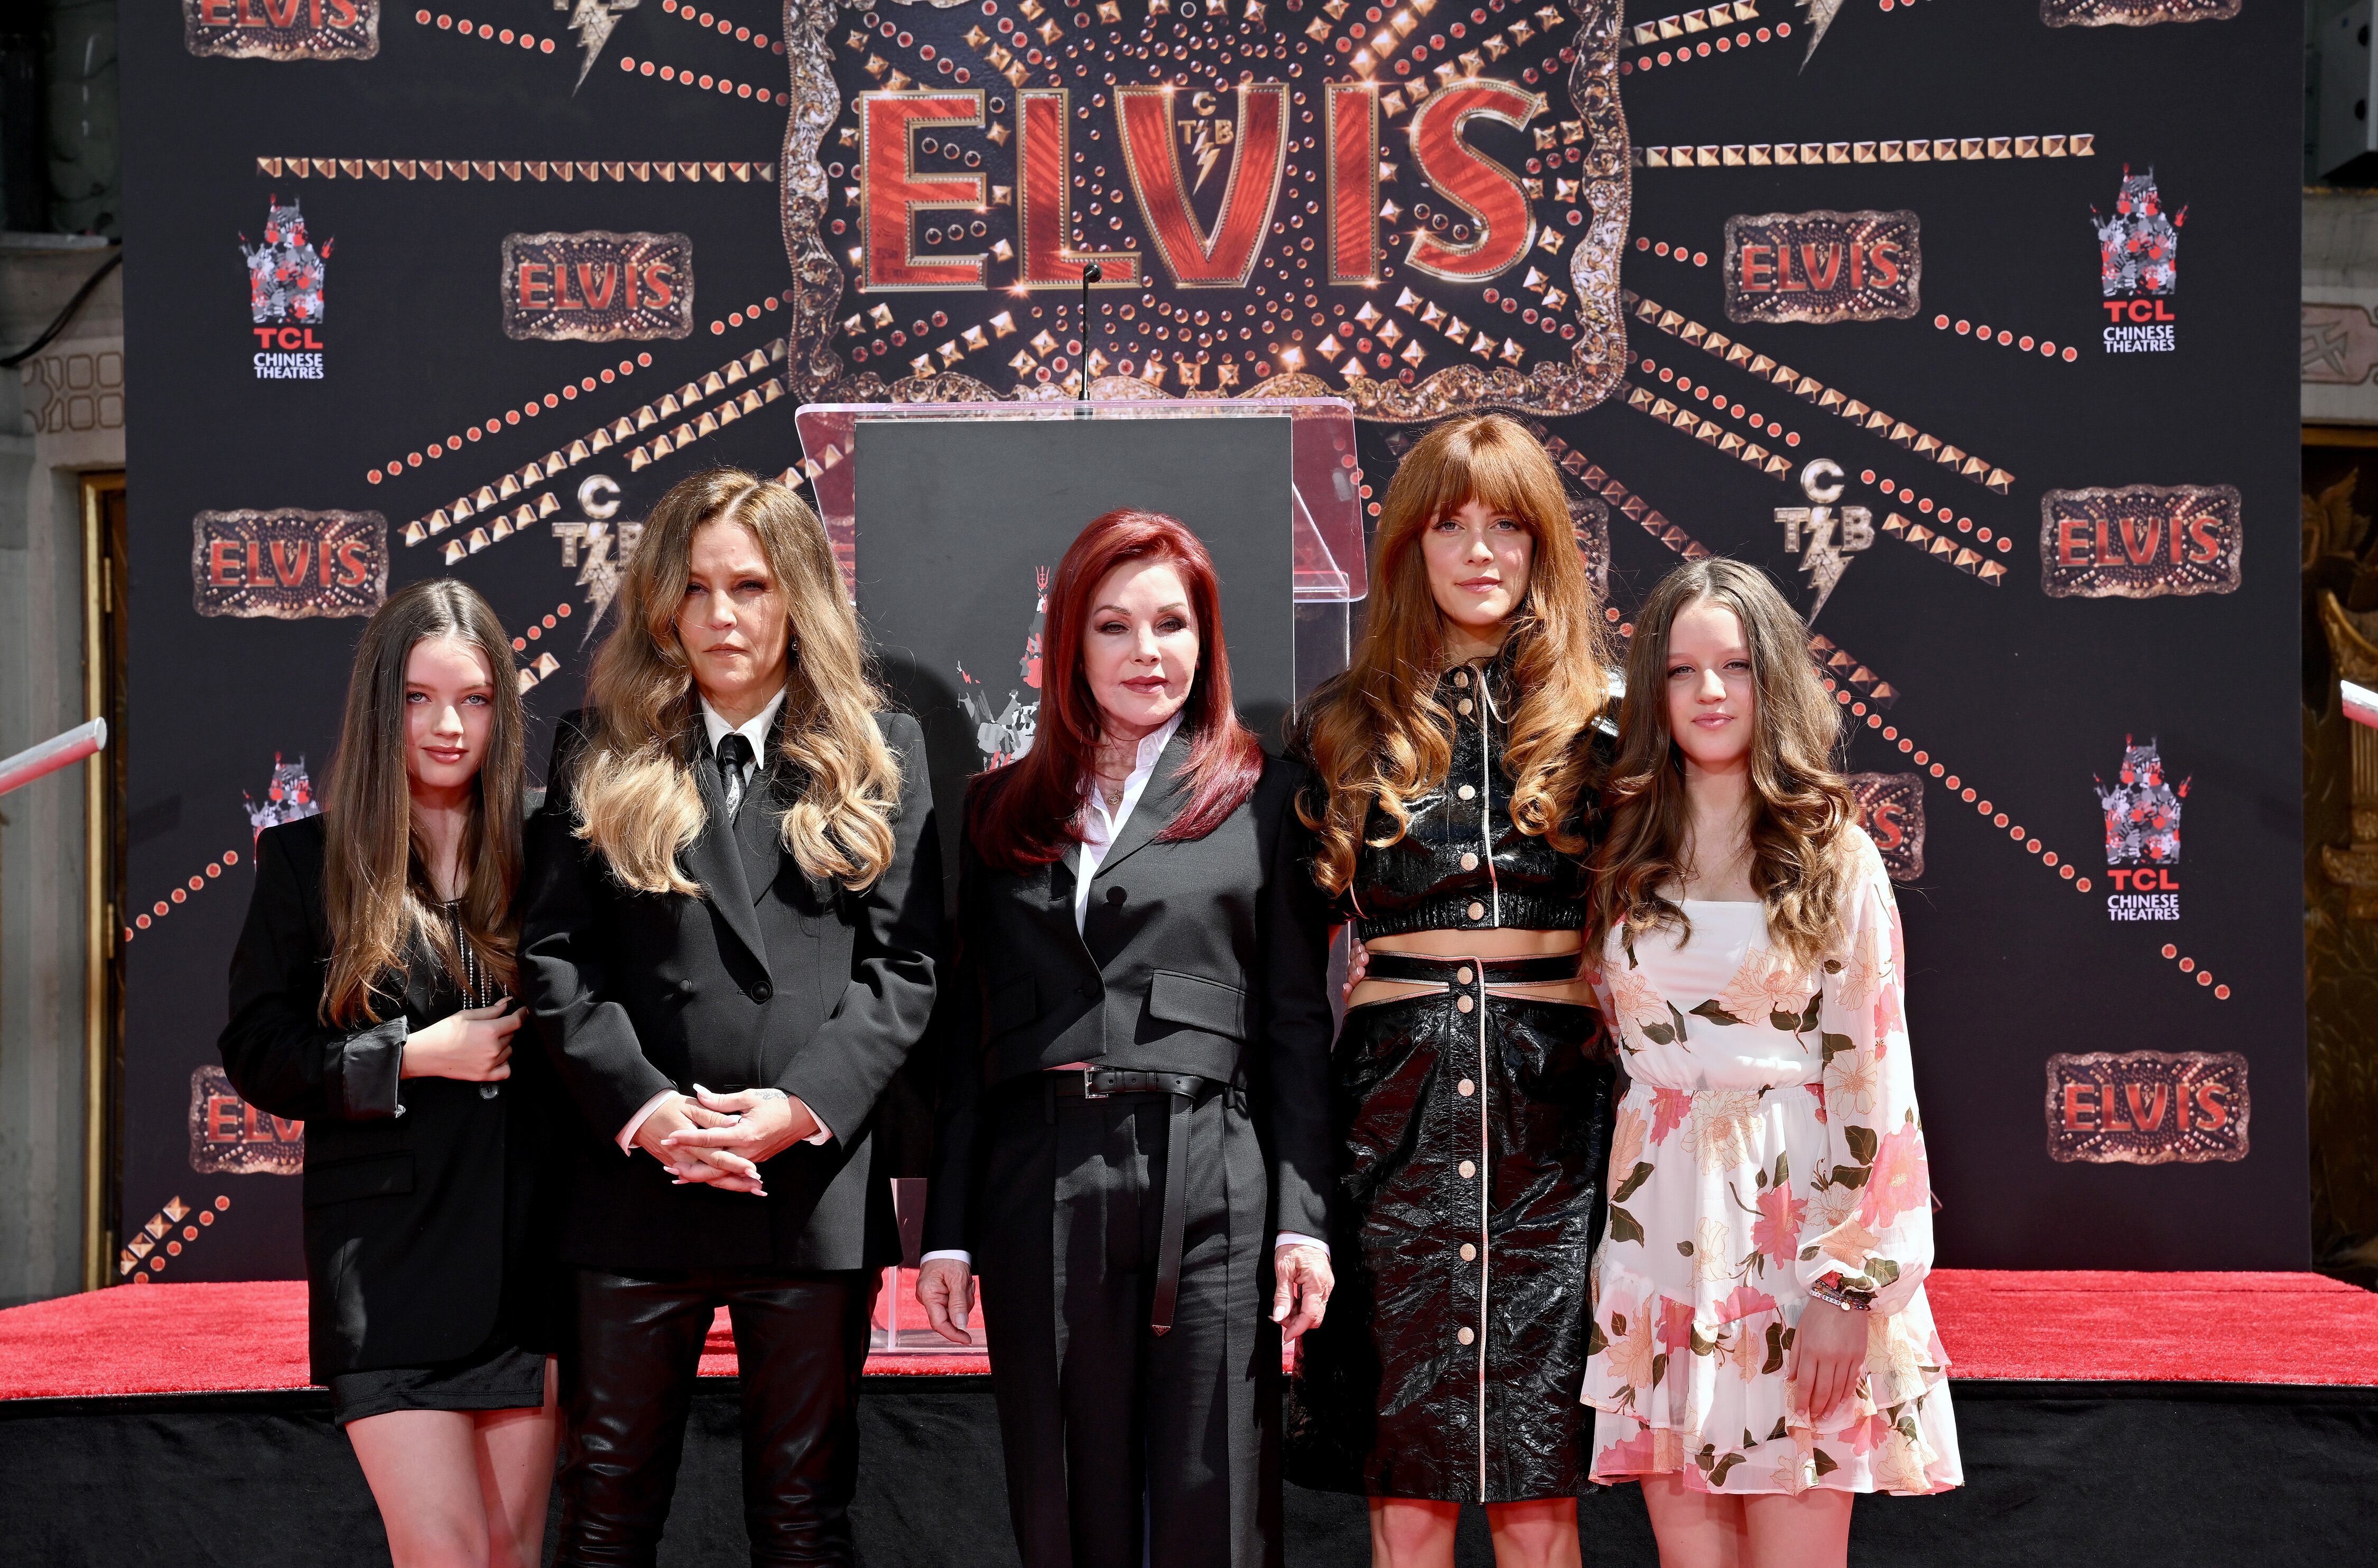 De izquierda a derecha, Harper Vivienne Ann Lockwood, Lisa Marie Presley, Priscilla Presley, Riley Keough y Finley Aaron, en una ceremonia en honor a Elvis Presley, el 21 de junio de 2022.